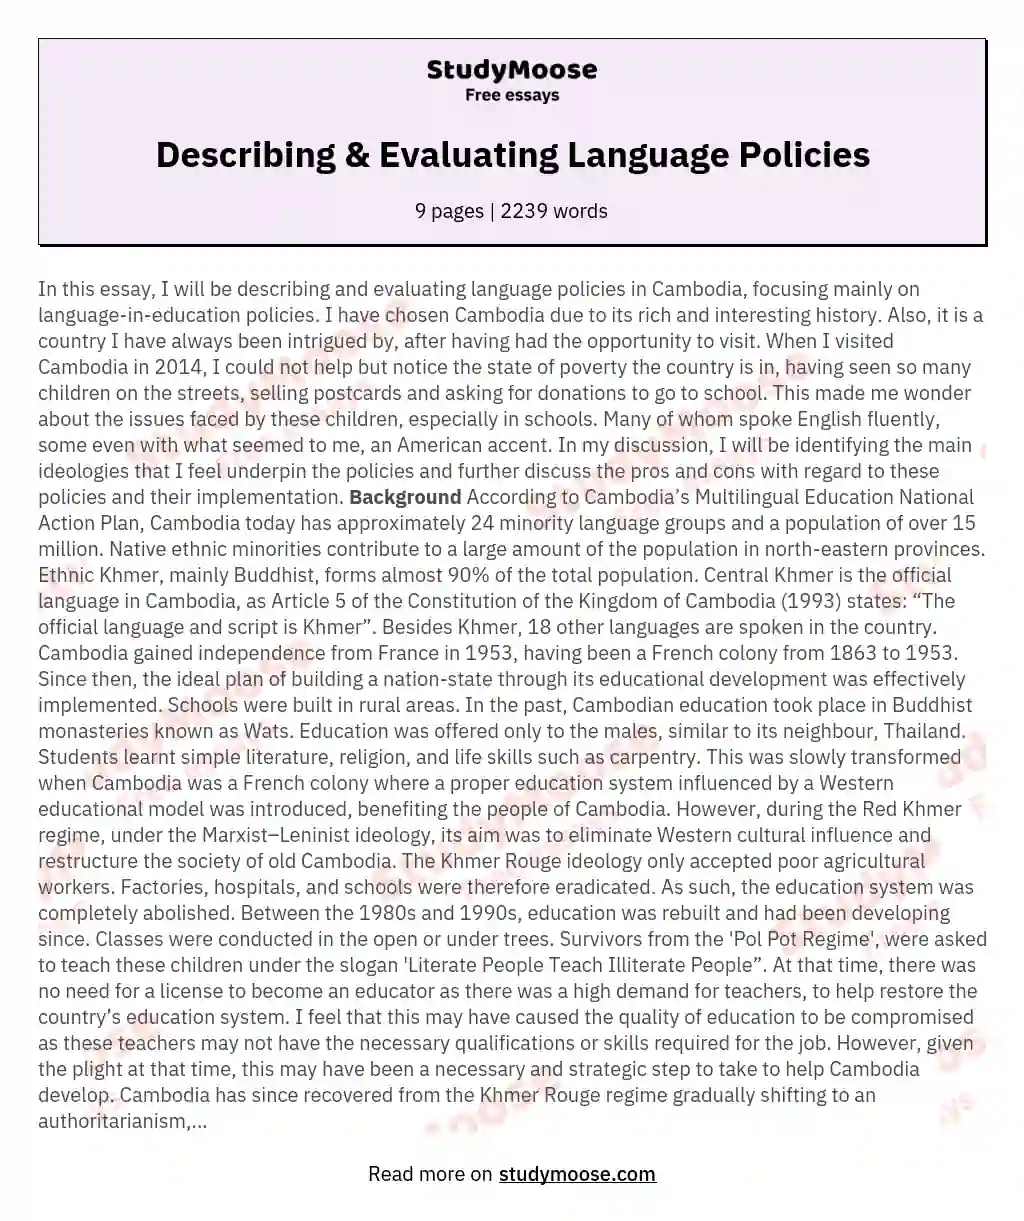 Describing & Evaluating Language Policies essay